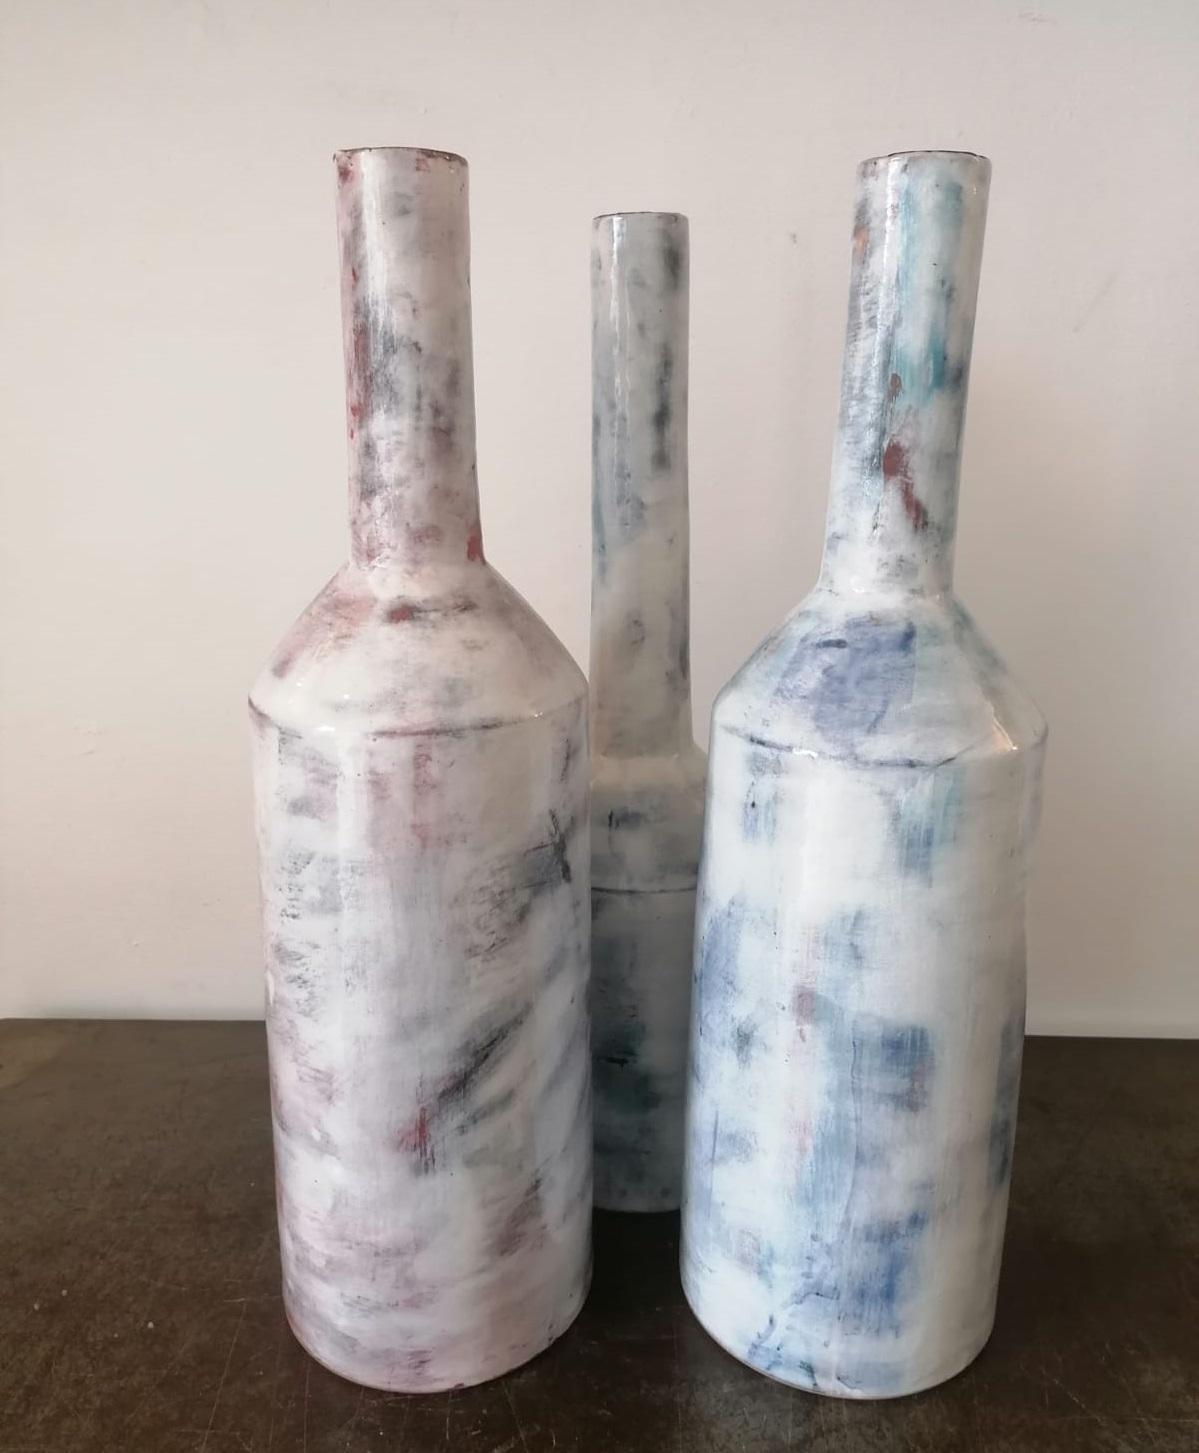 Italian Large Contemporary Handmade Glazed Ceramic Vases, Italy, 21st Century (21. Jahrhundert und zeitgenössisch)